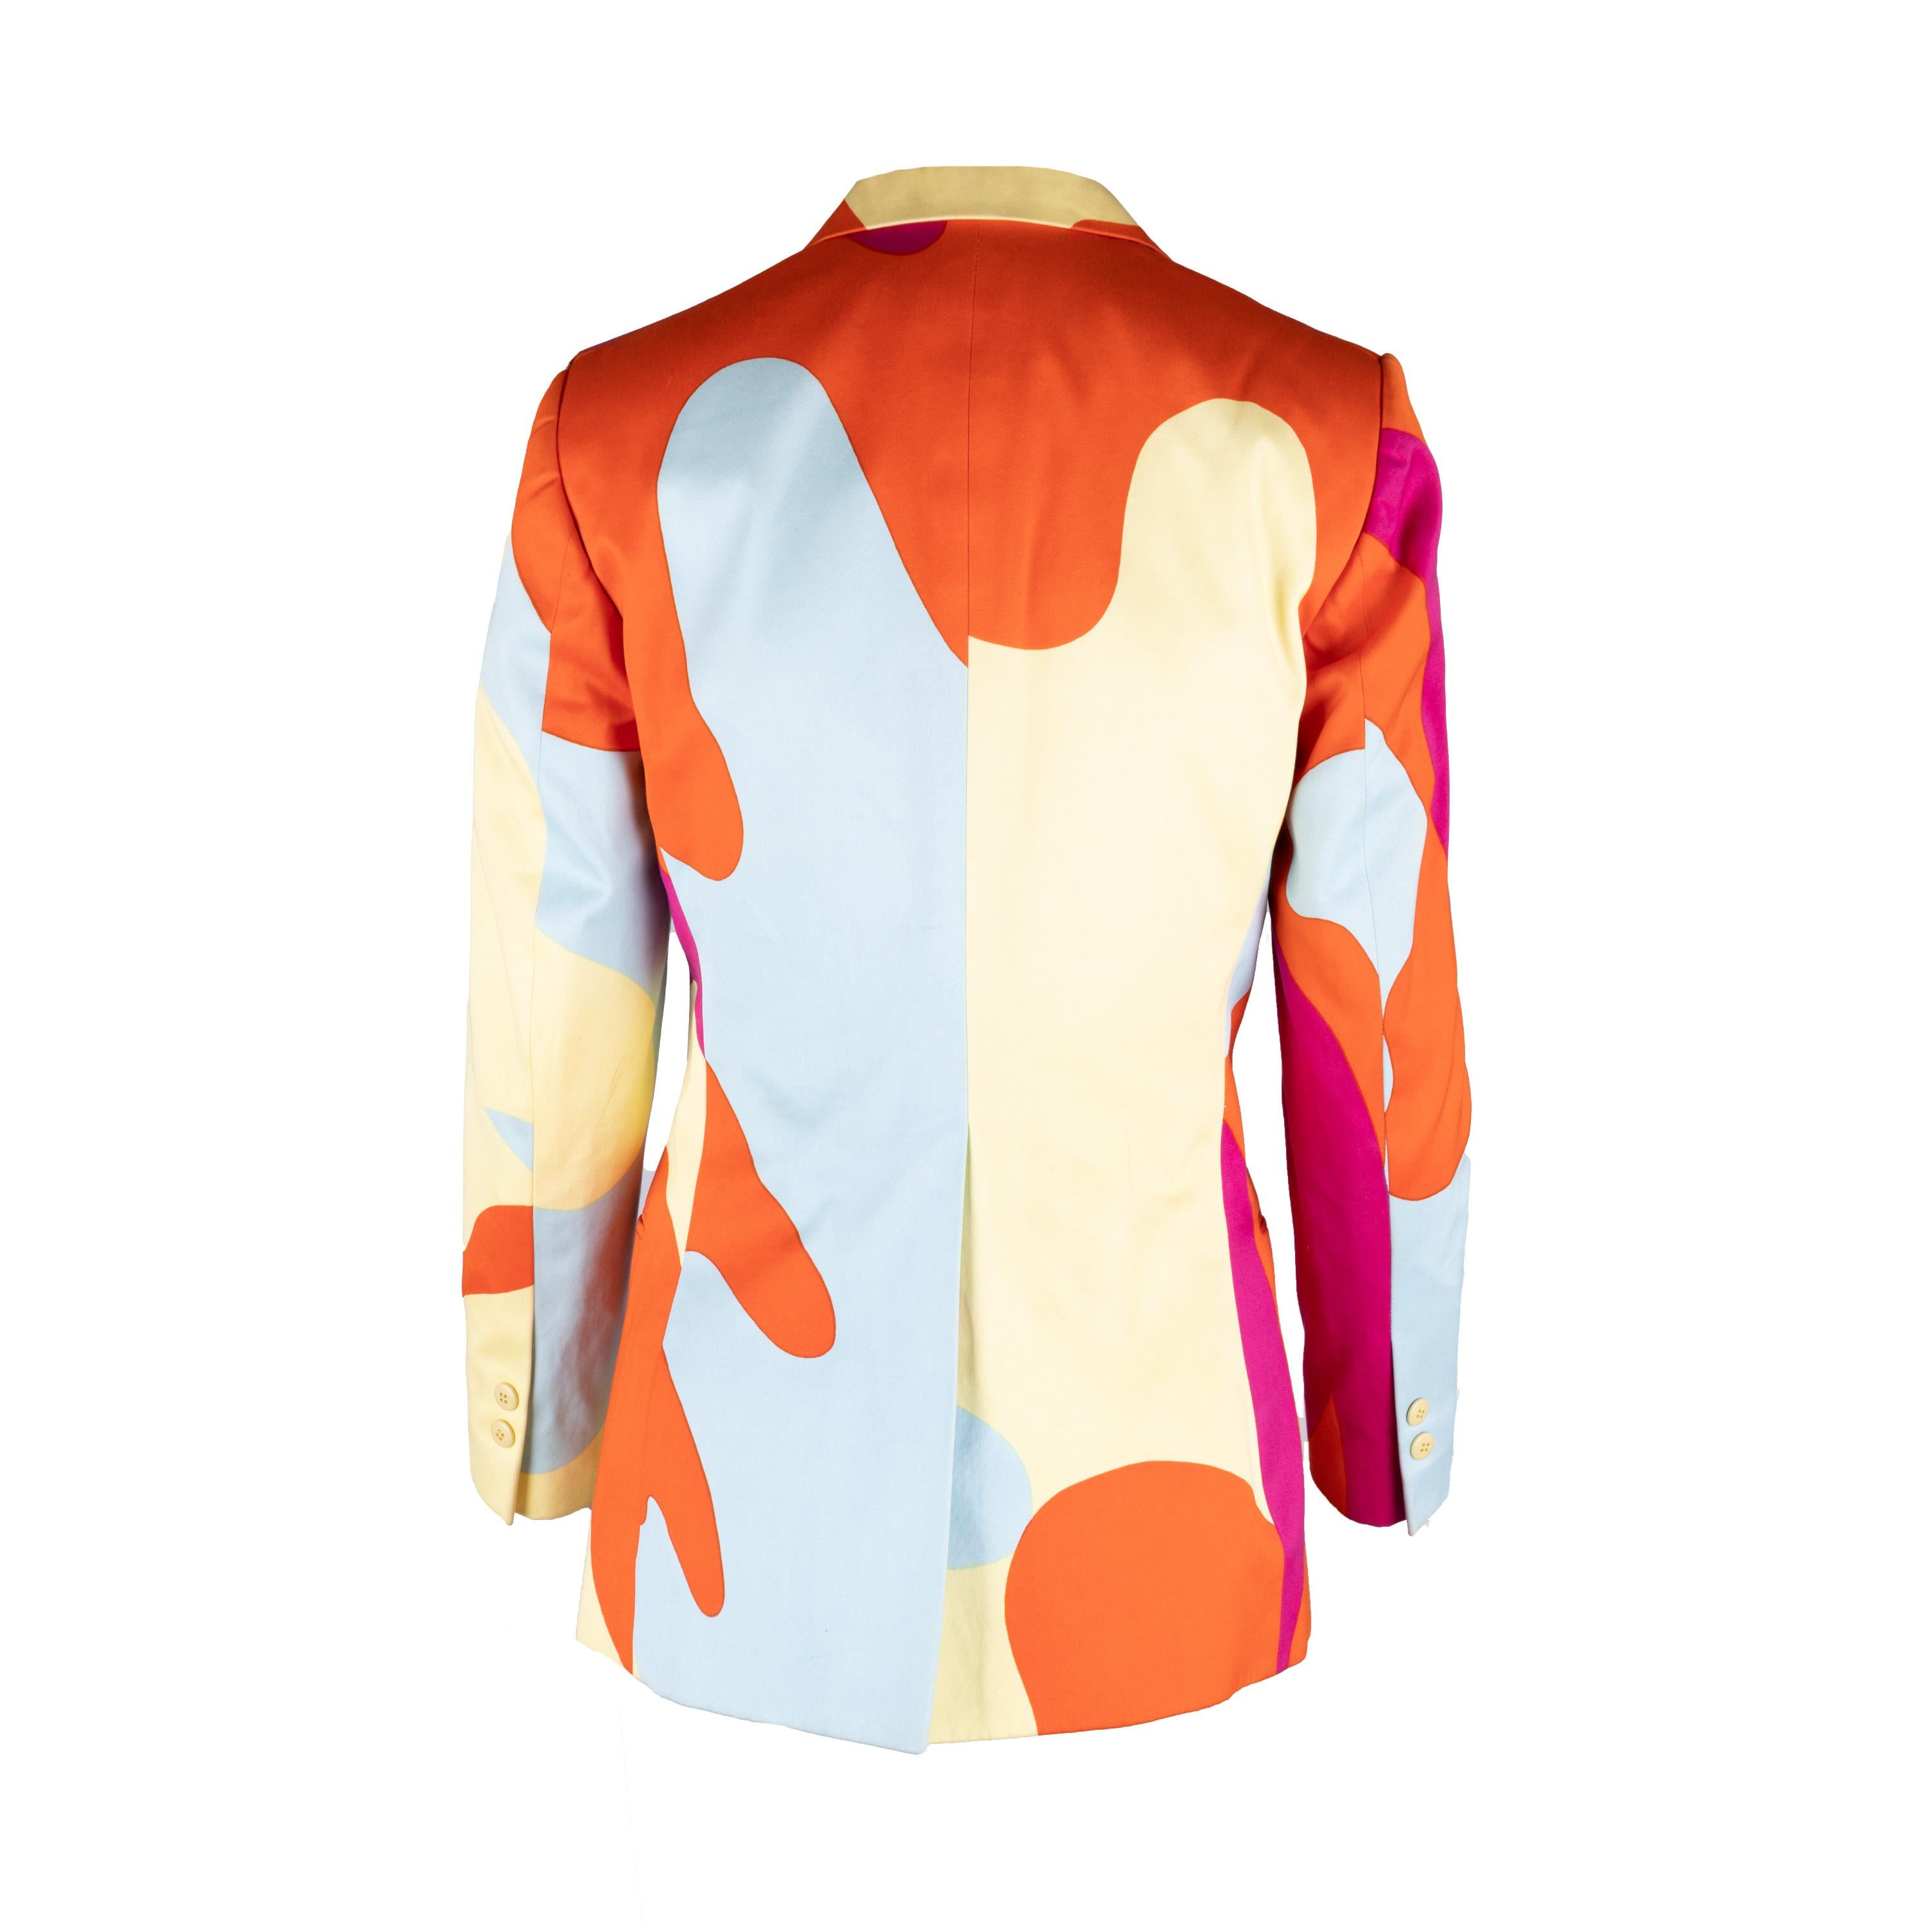 Diese Vintage Stephen Sprouse x Andy Warhol 1987 Camouflage Jacket ist eine einzigartige Jacke, die von Andy Warhol American entworfen wurde. Reverskragen und Brusttasche sorgen für klassischen Stil, während zwei Knöpfe auf der Vorderseite den Look